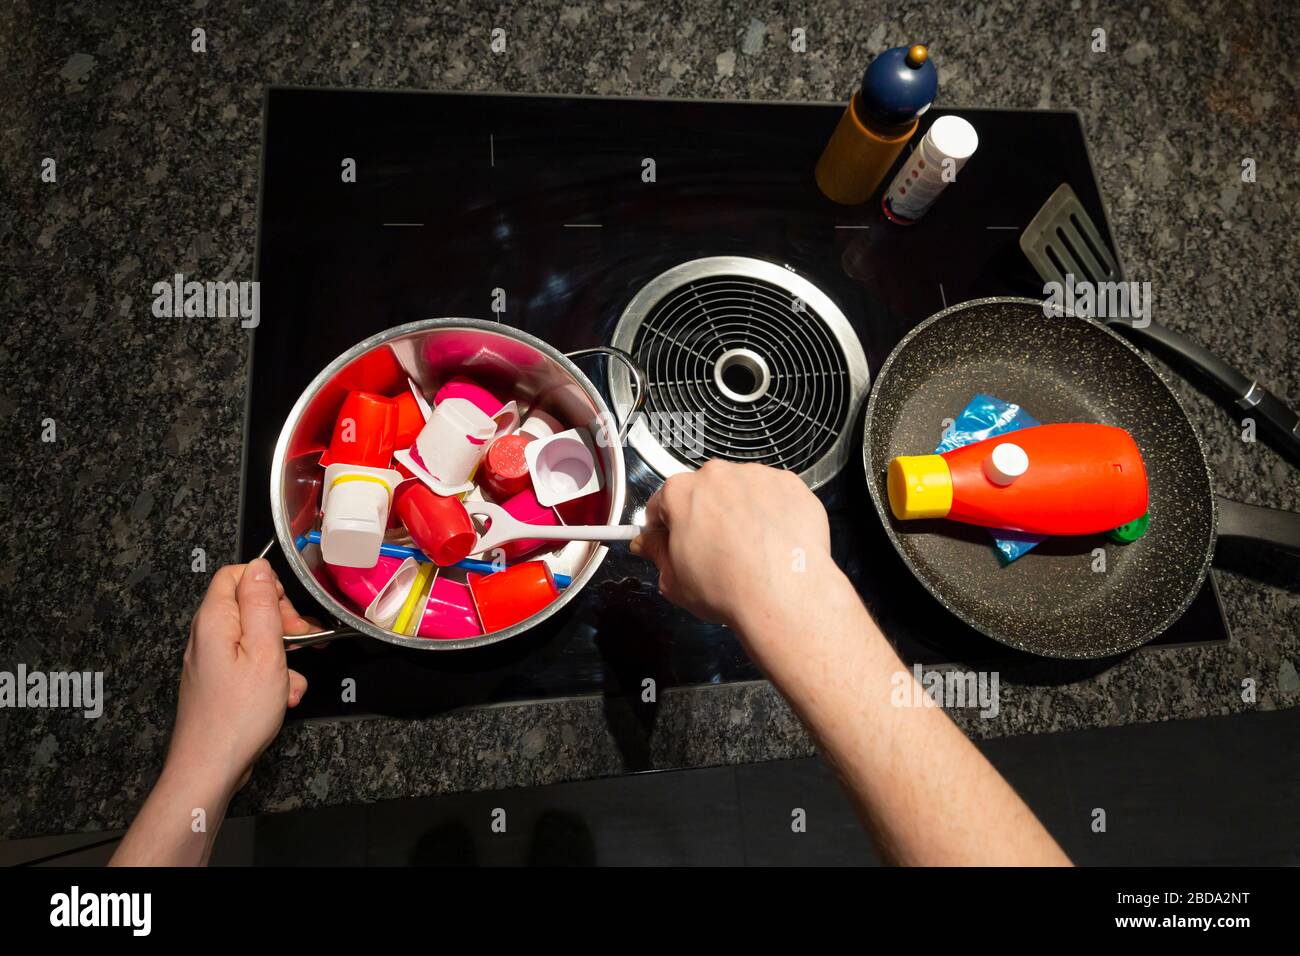 Concept de pollution alimentaire par les déchets plastiques. Vue de dessus d'une personne mains sur une cuisinière avec une friture et une poêle remplie d'objets en plastique Banque D'Images